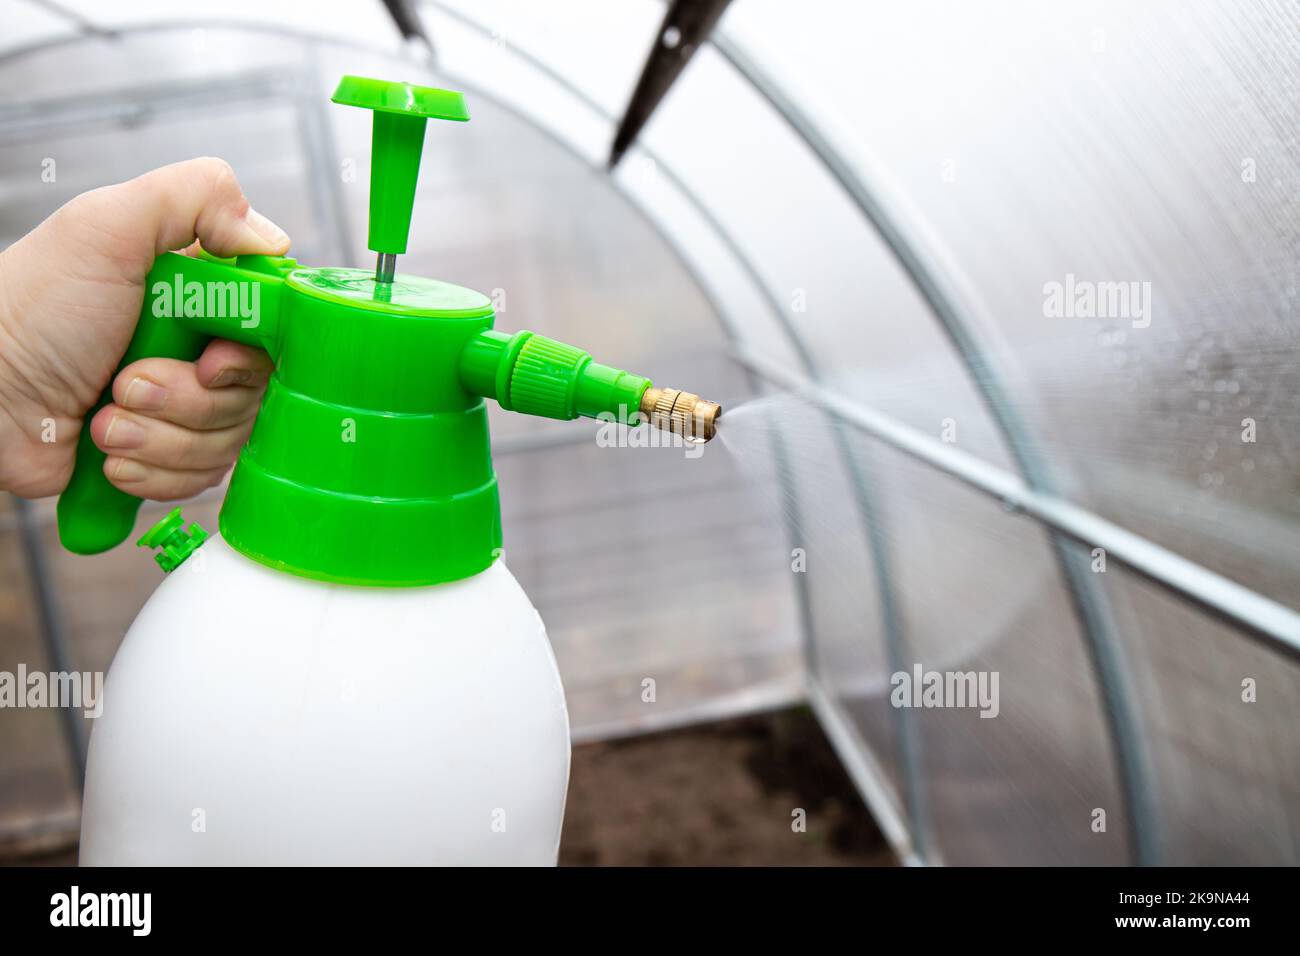 Reinigung des leeren Gewächshauses mit einer antibakteriellen Reinigungsflüssigkeit, Gärtner Hand sprühen es auf die Gewächshauswand zur Desinfektion. Gartenarbeit im Herbst. Stockfoto